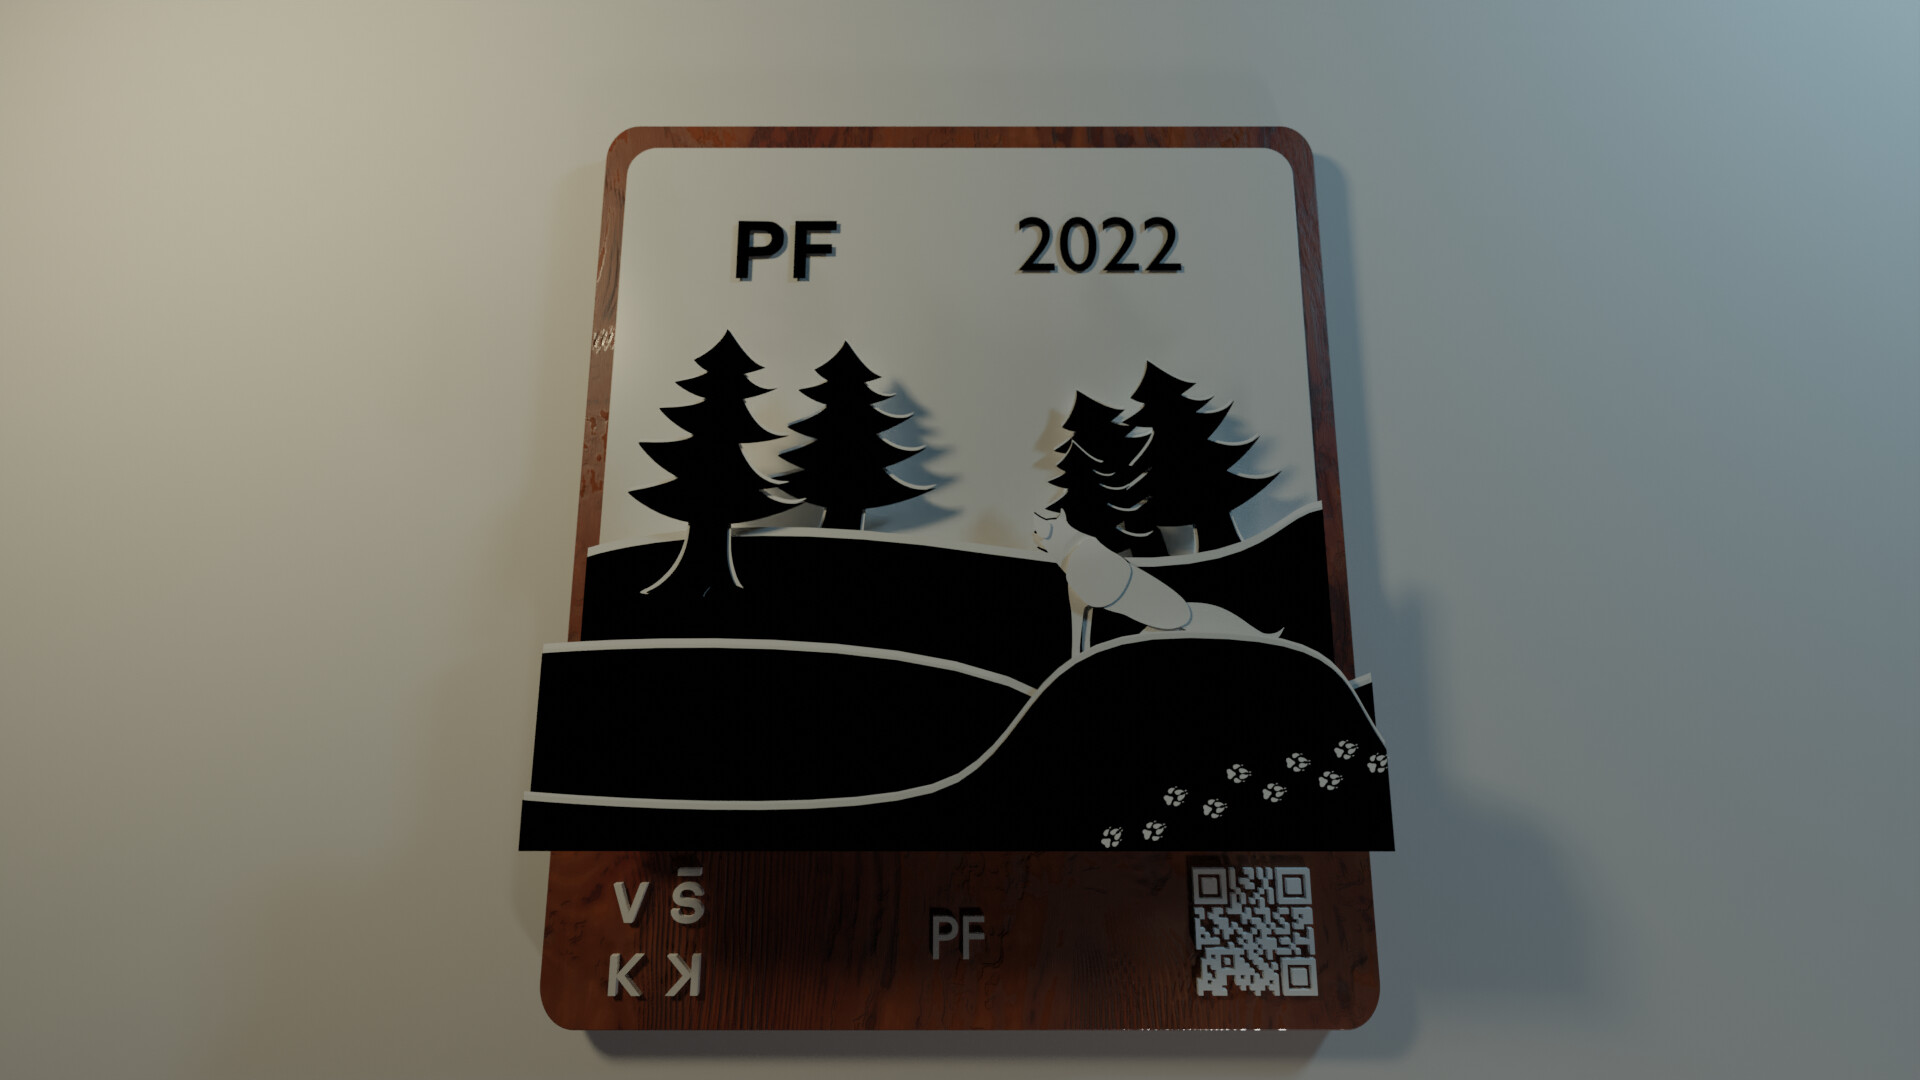 Motion Graphics - PF VSKK 2022